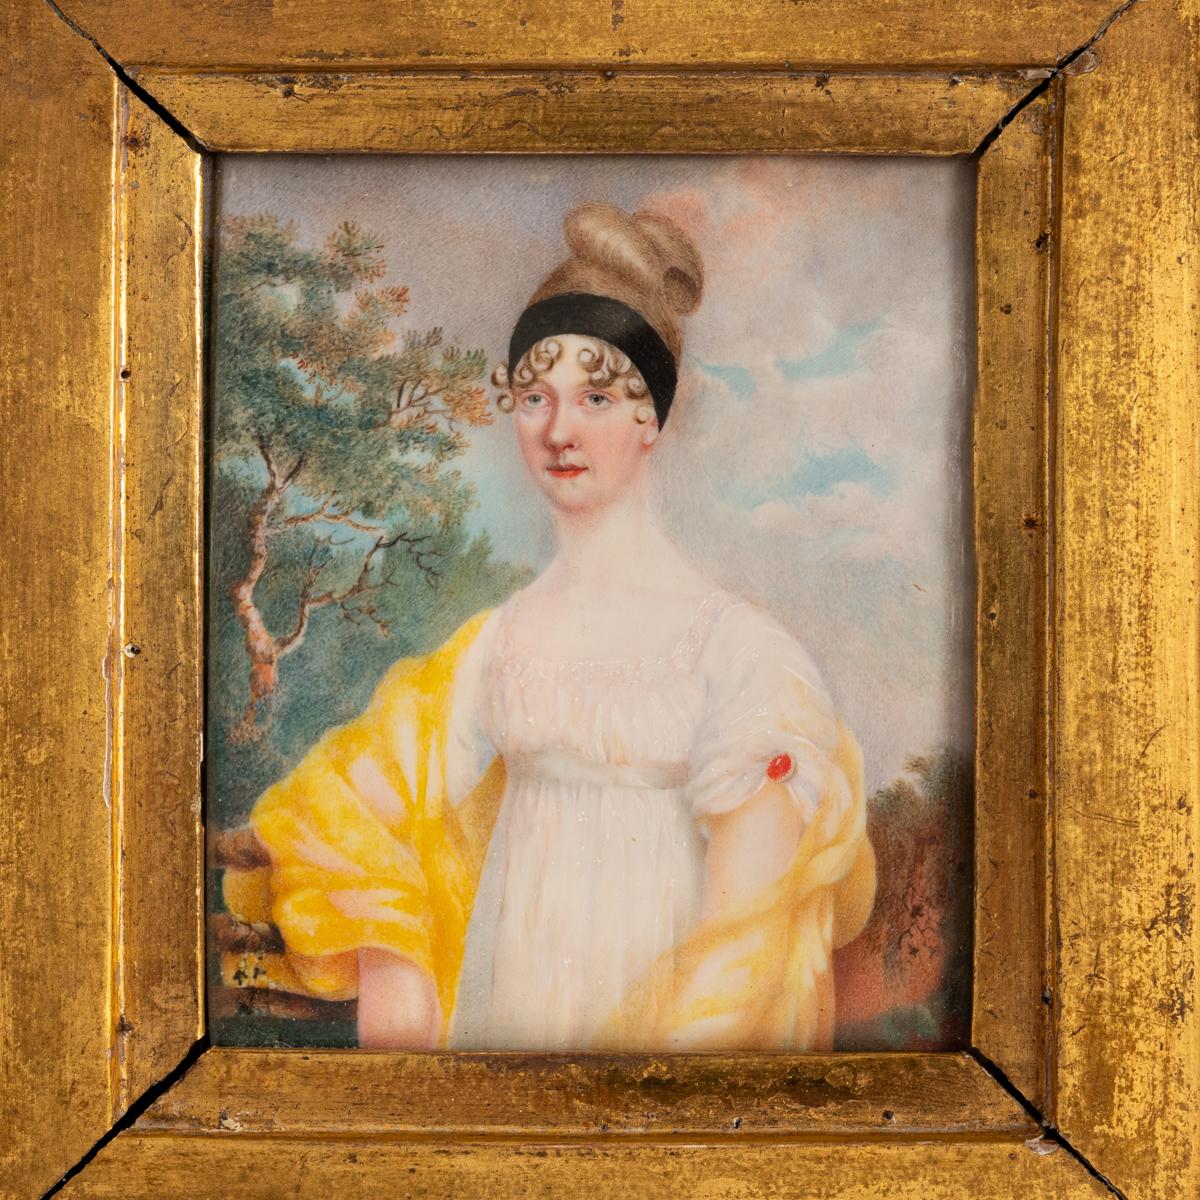 Un bon portrait miniature d'une dame de l'époque de la Régence géorgienne, vers 1810.
Ce portrait plutôt inhabituel et presque particulier d'une dame de l'époque de Jane Austen, peint sur une galette d'ivoire et placé dans le cadre original en bois